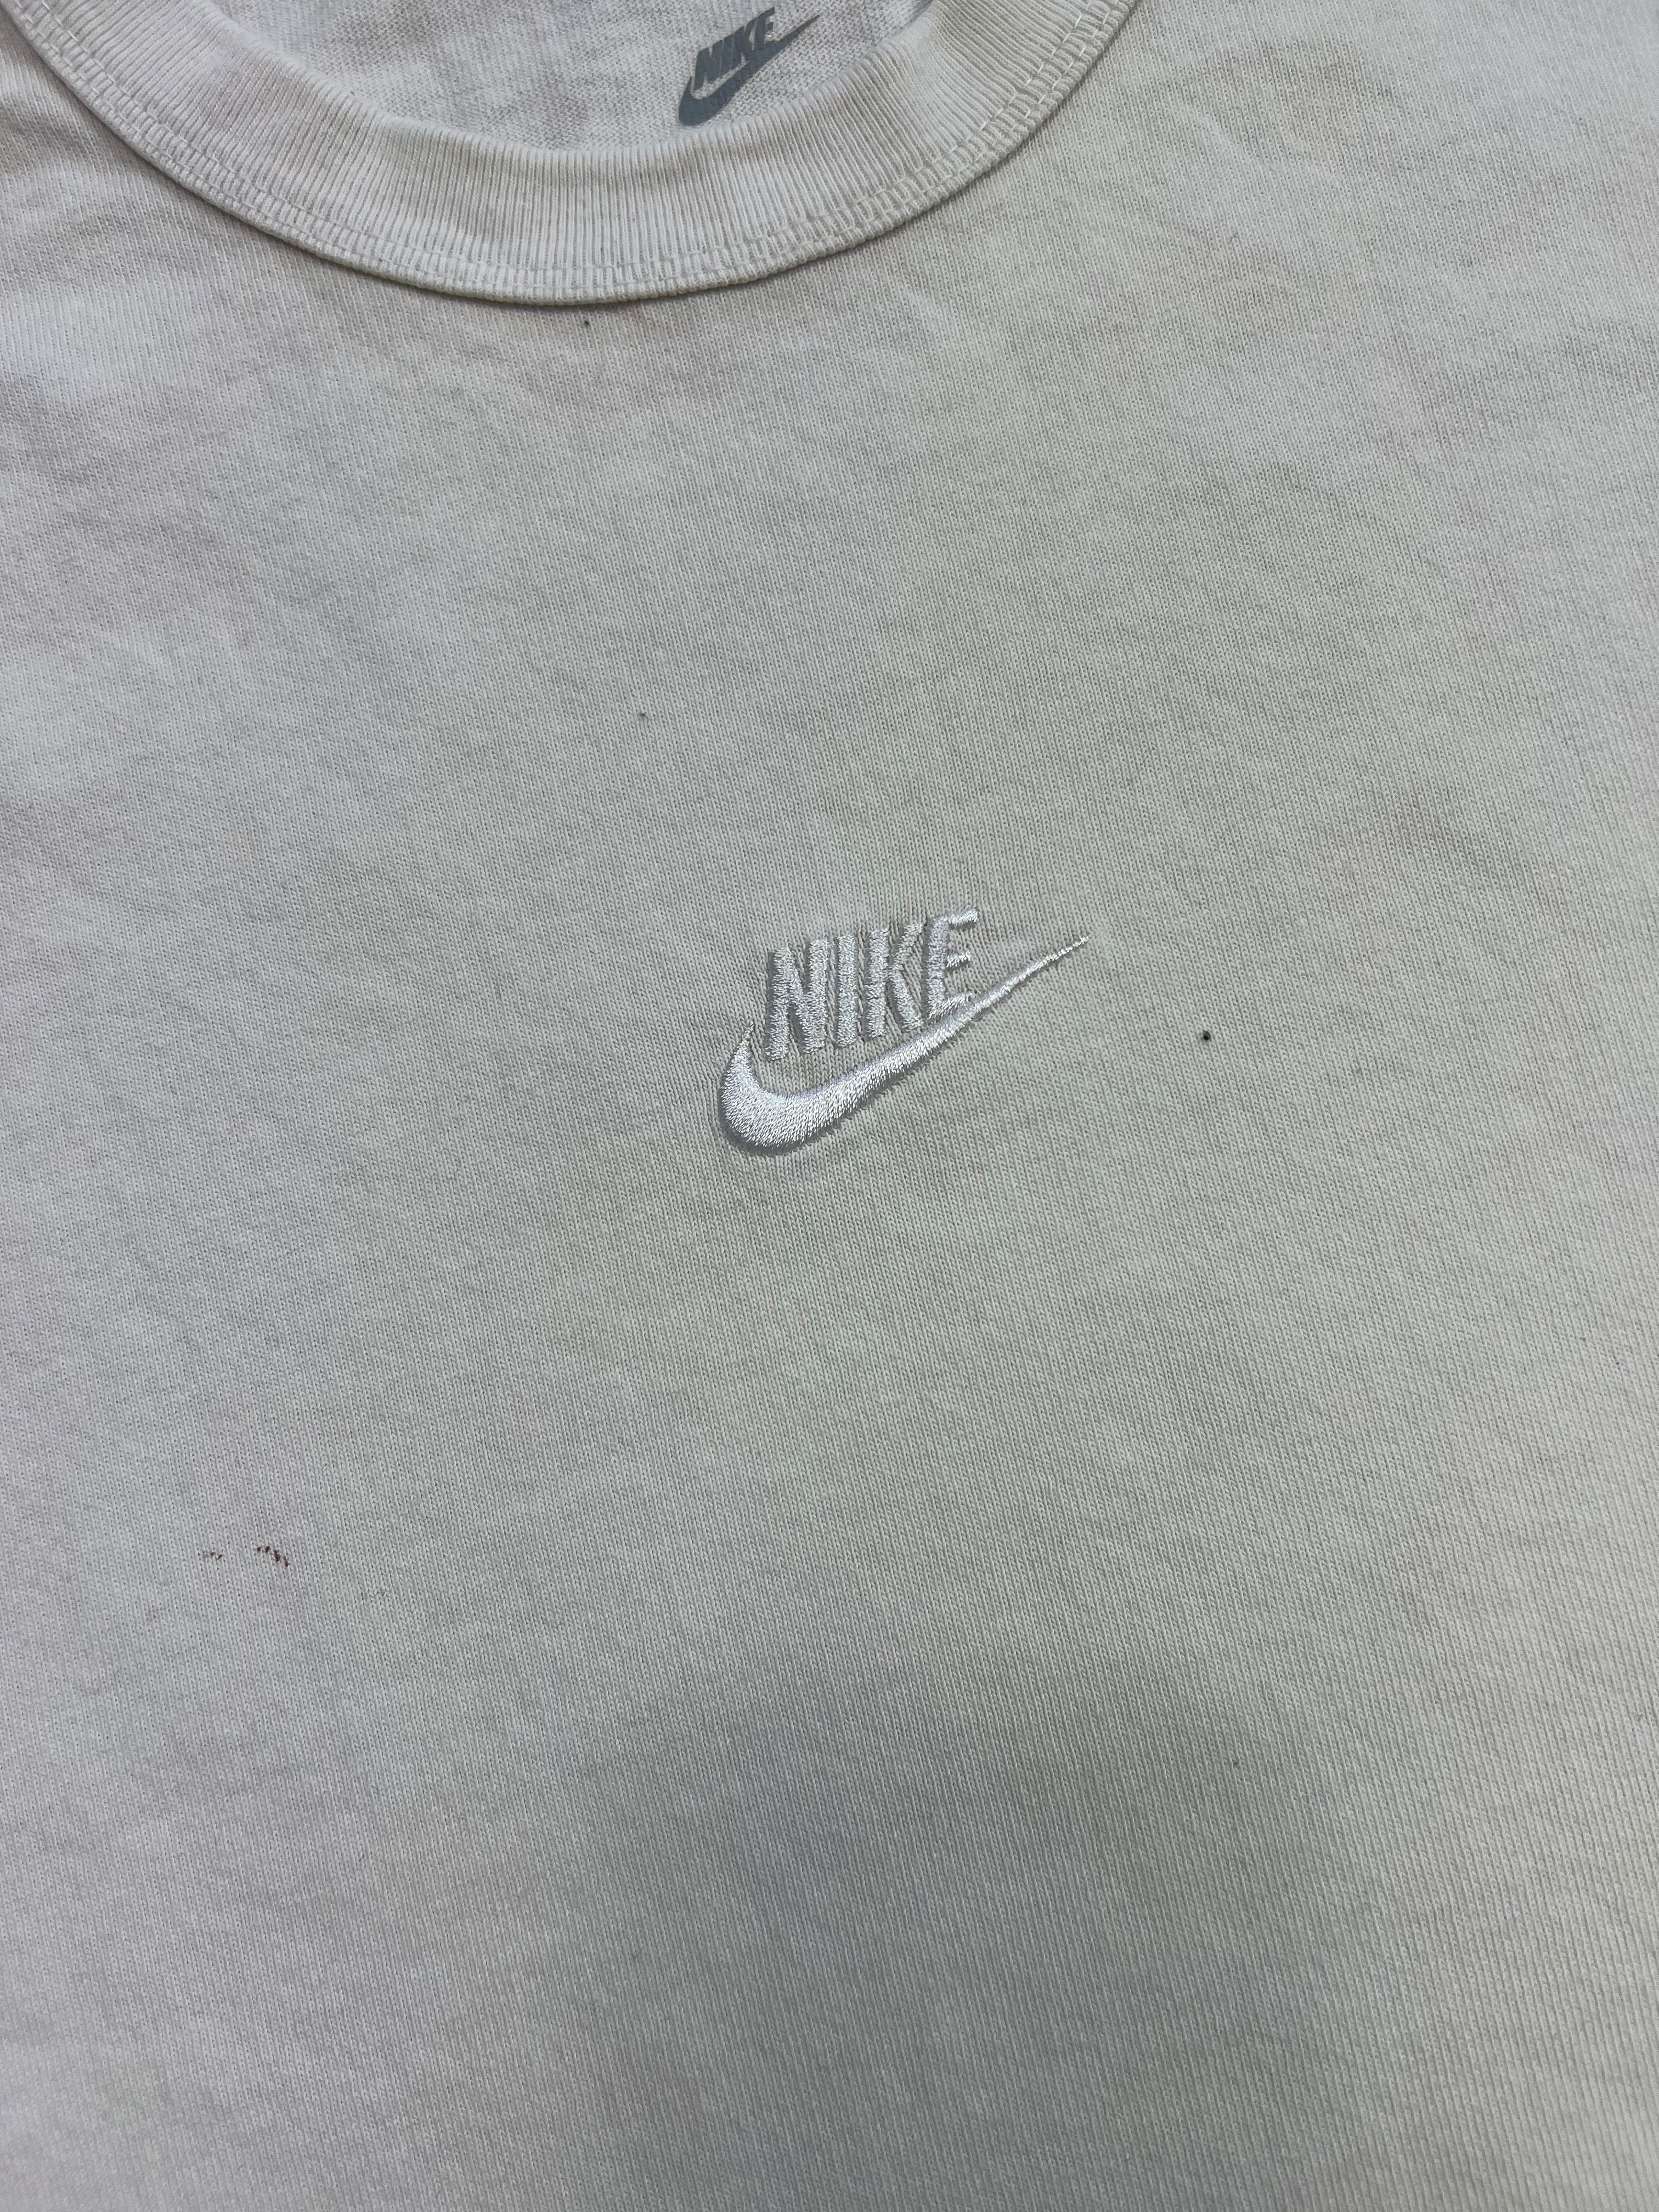 Bluza Nike small center logo white